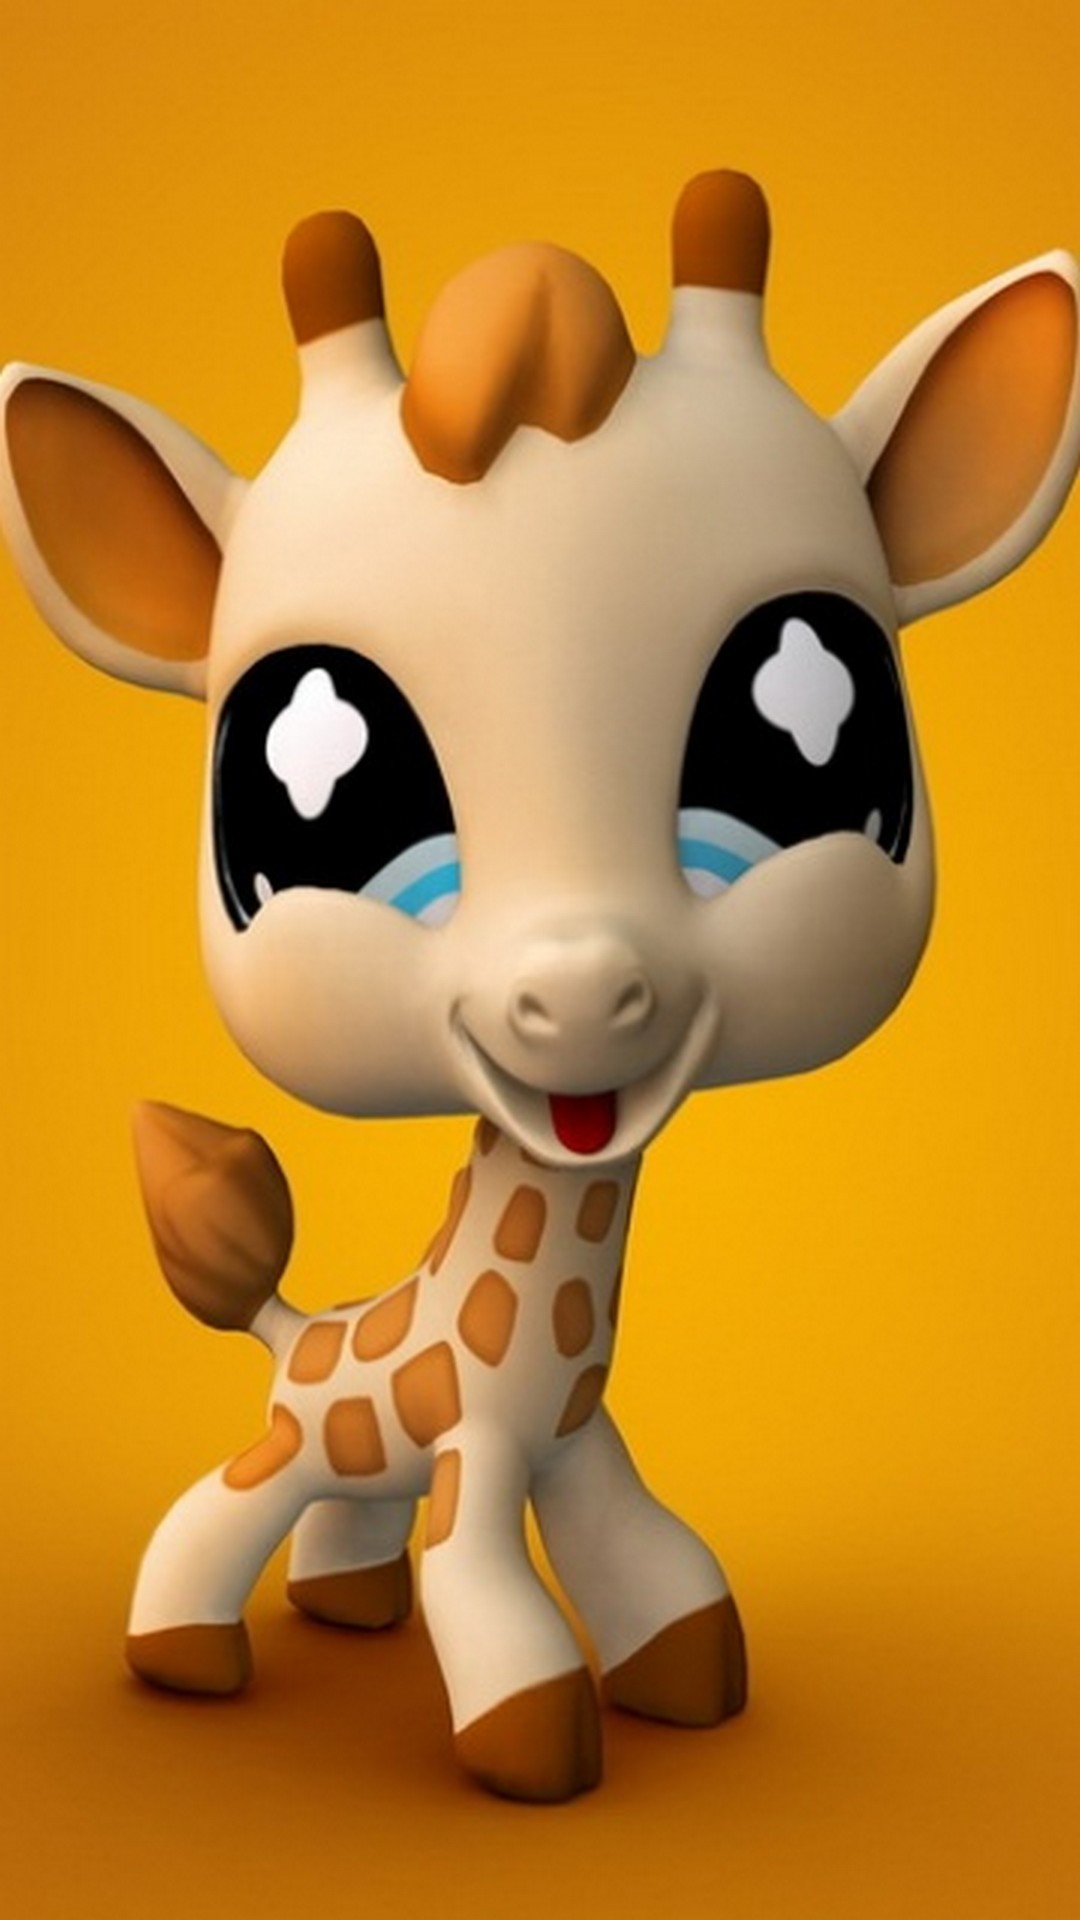 Cute Giraffe Wallpaper iPhone resolution 1080x1920